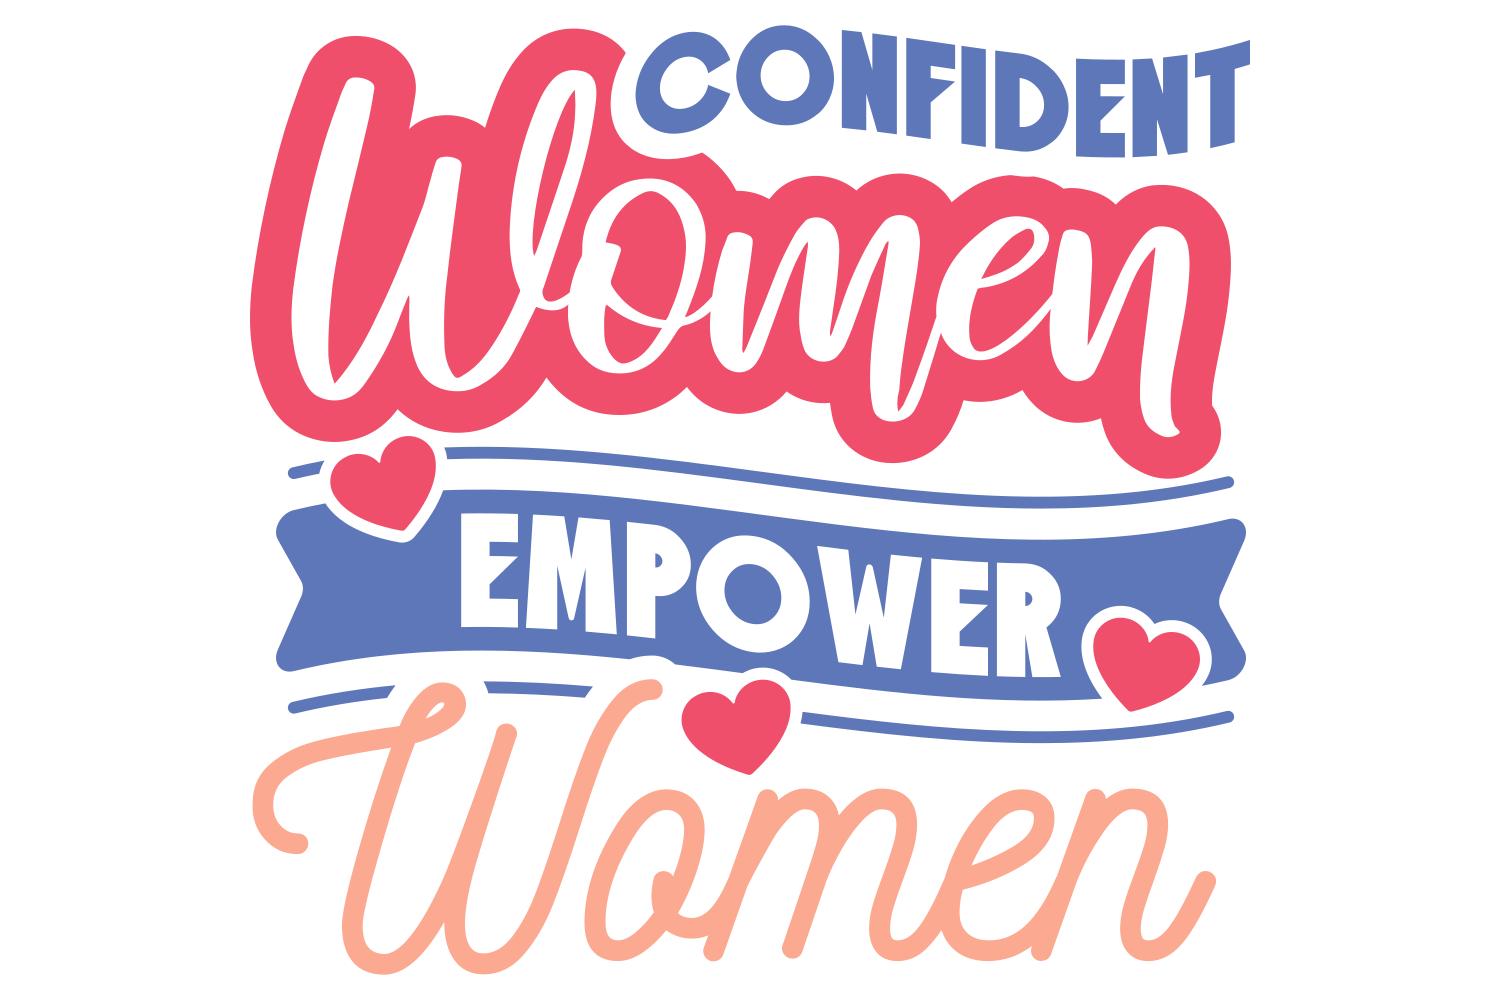 Confident Women Empower Women